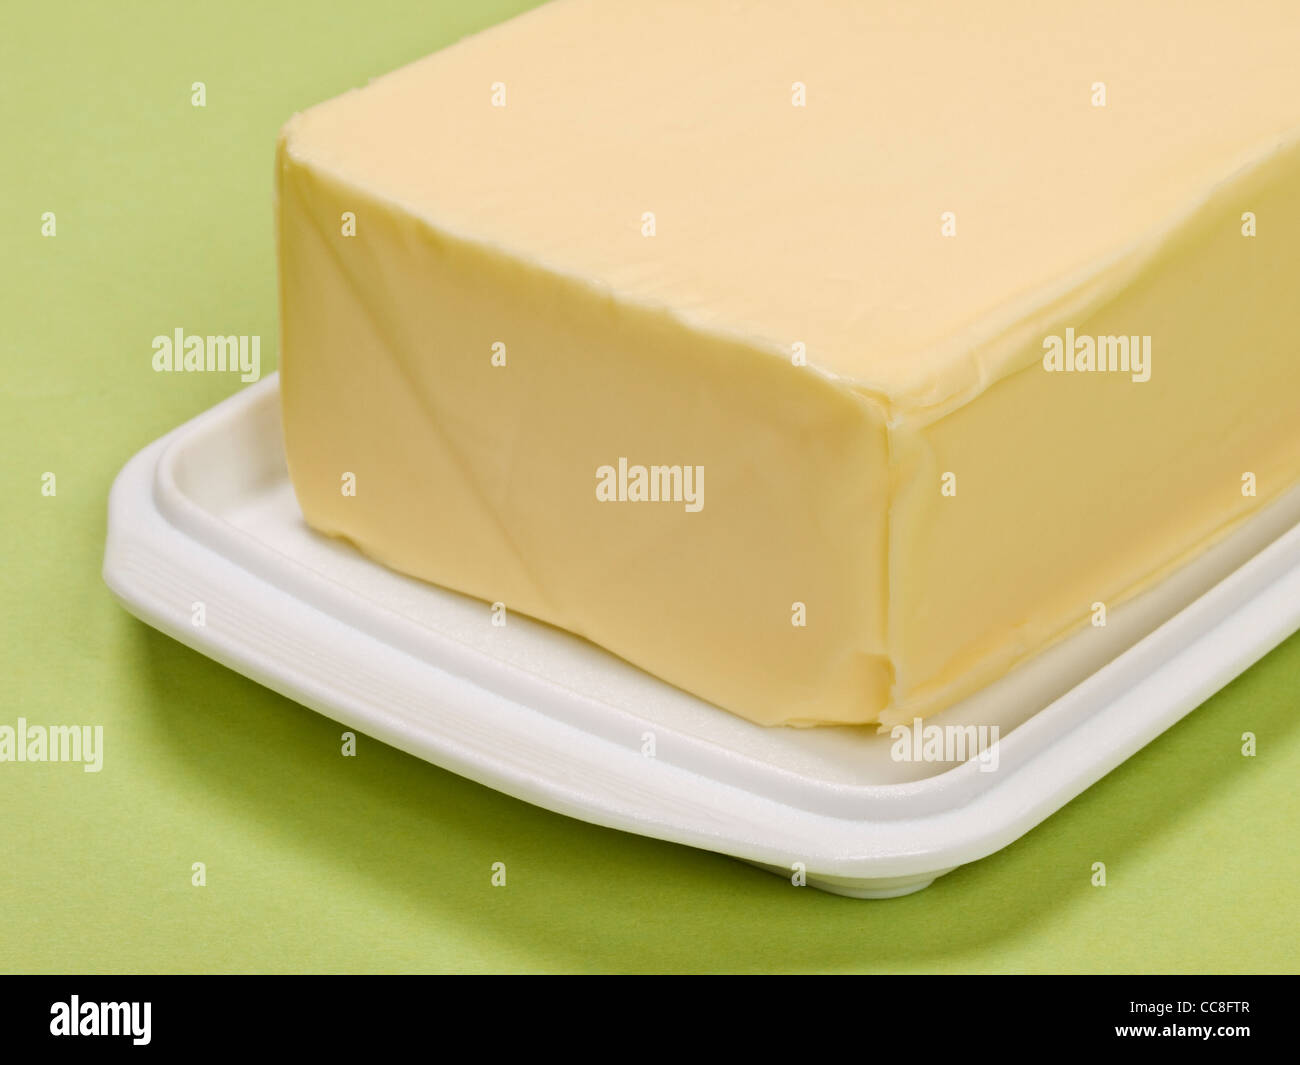 Detailansicht von einem Stück Butter | photo de détail un morceau de beurre Banque D'Images